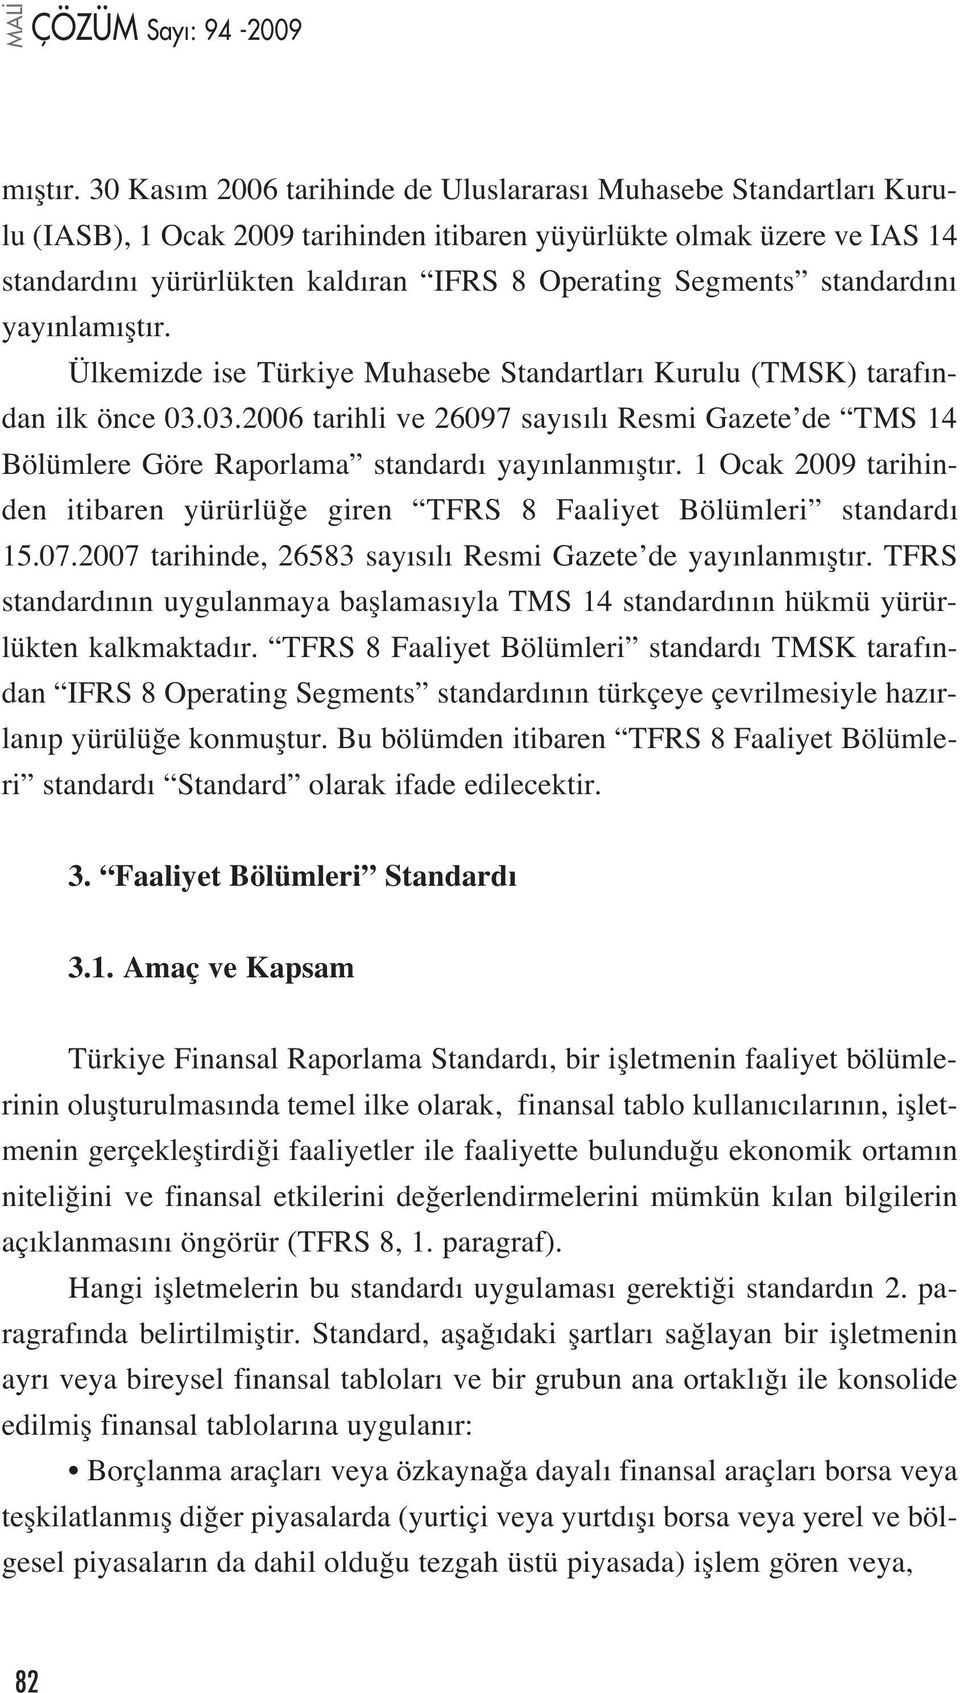 standard n yay nla Ülkemizde ise Türkiye Muhasebe Standartlar Kurulu (TMSK) taraf ndan ilk önce 03.